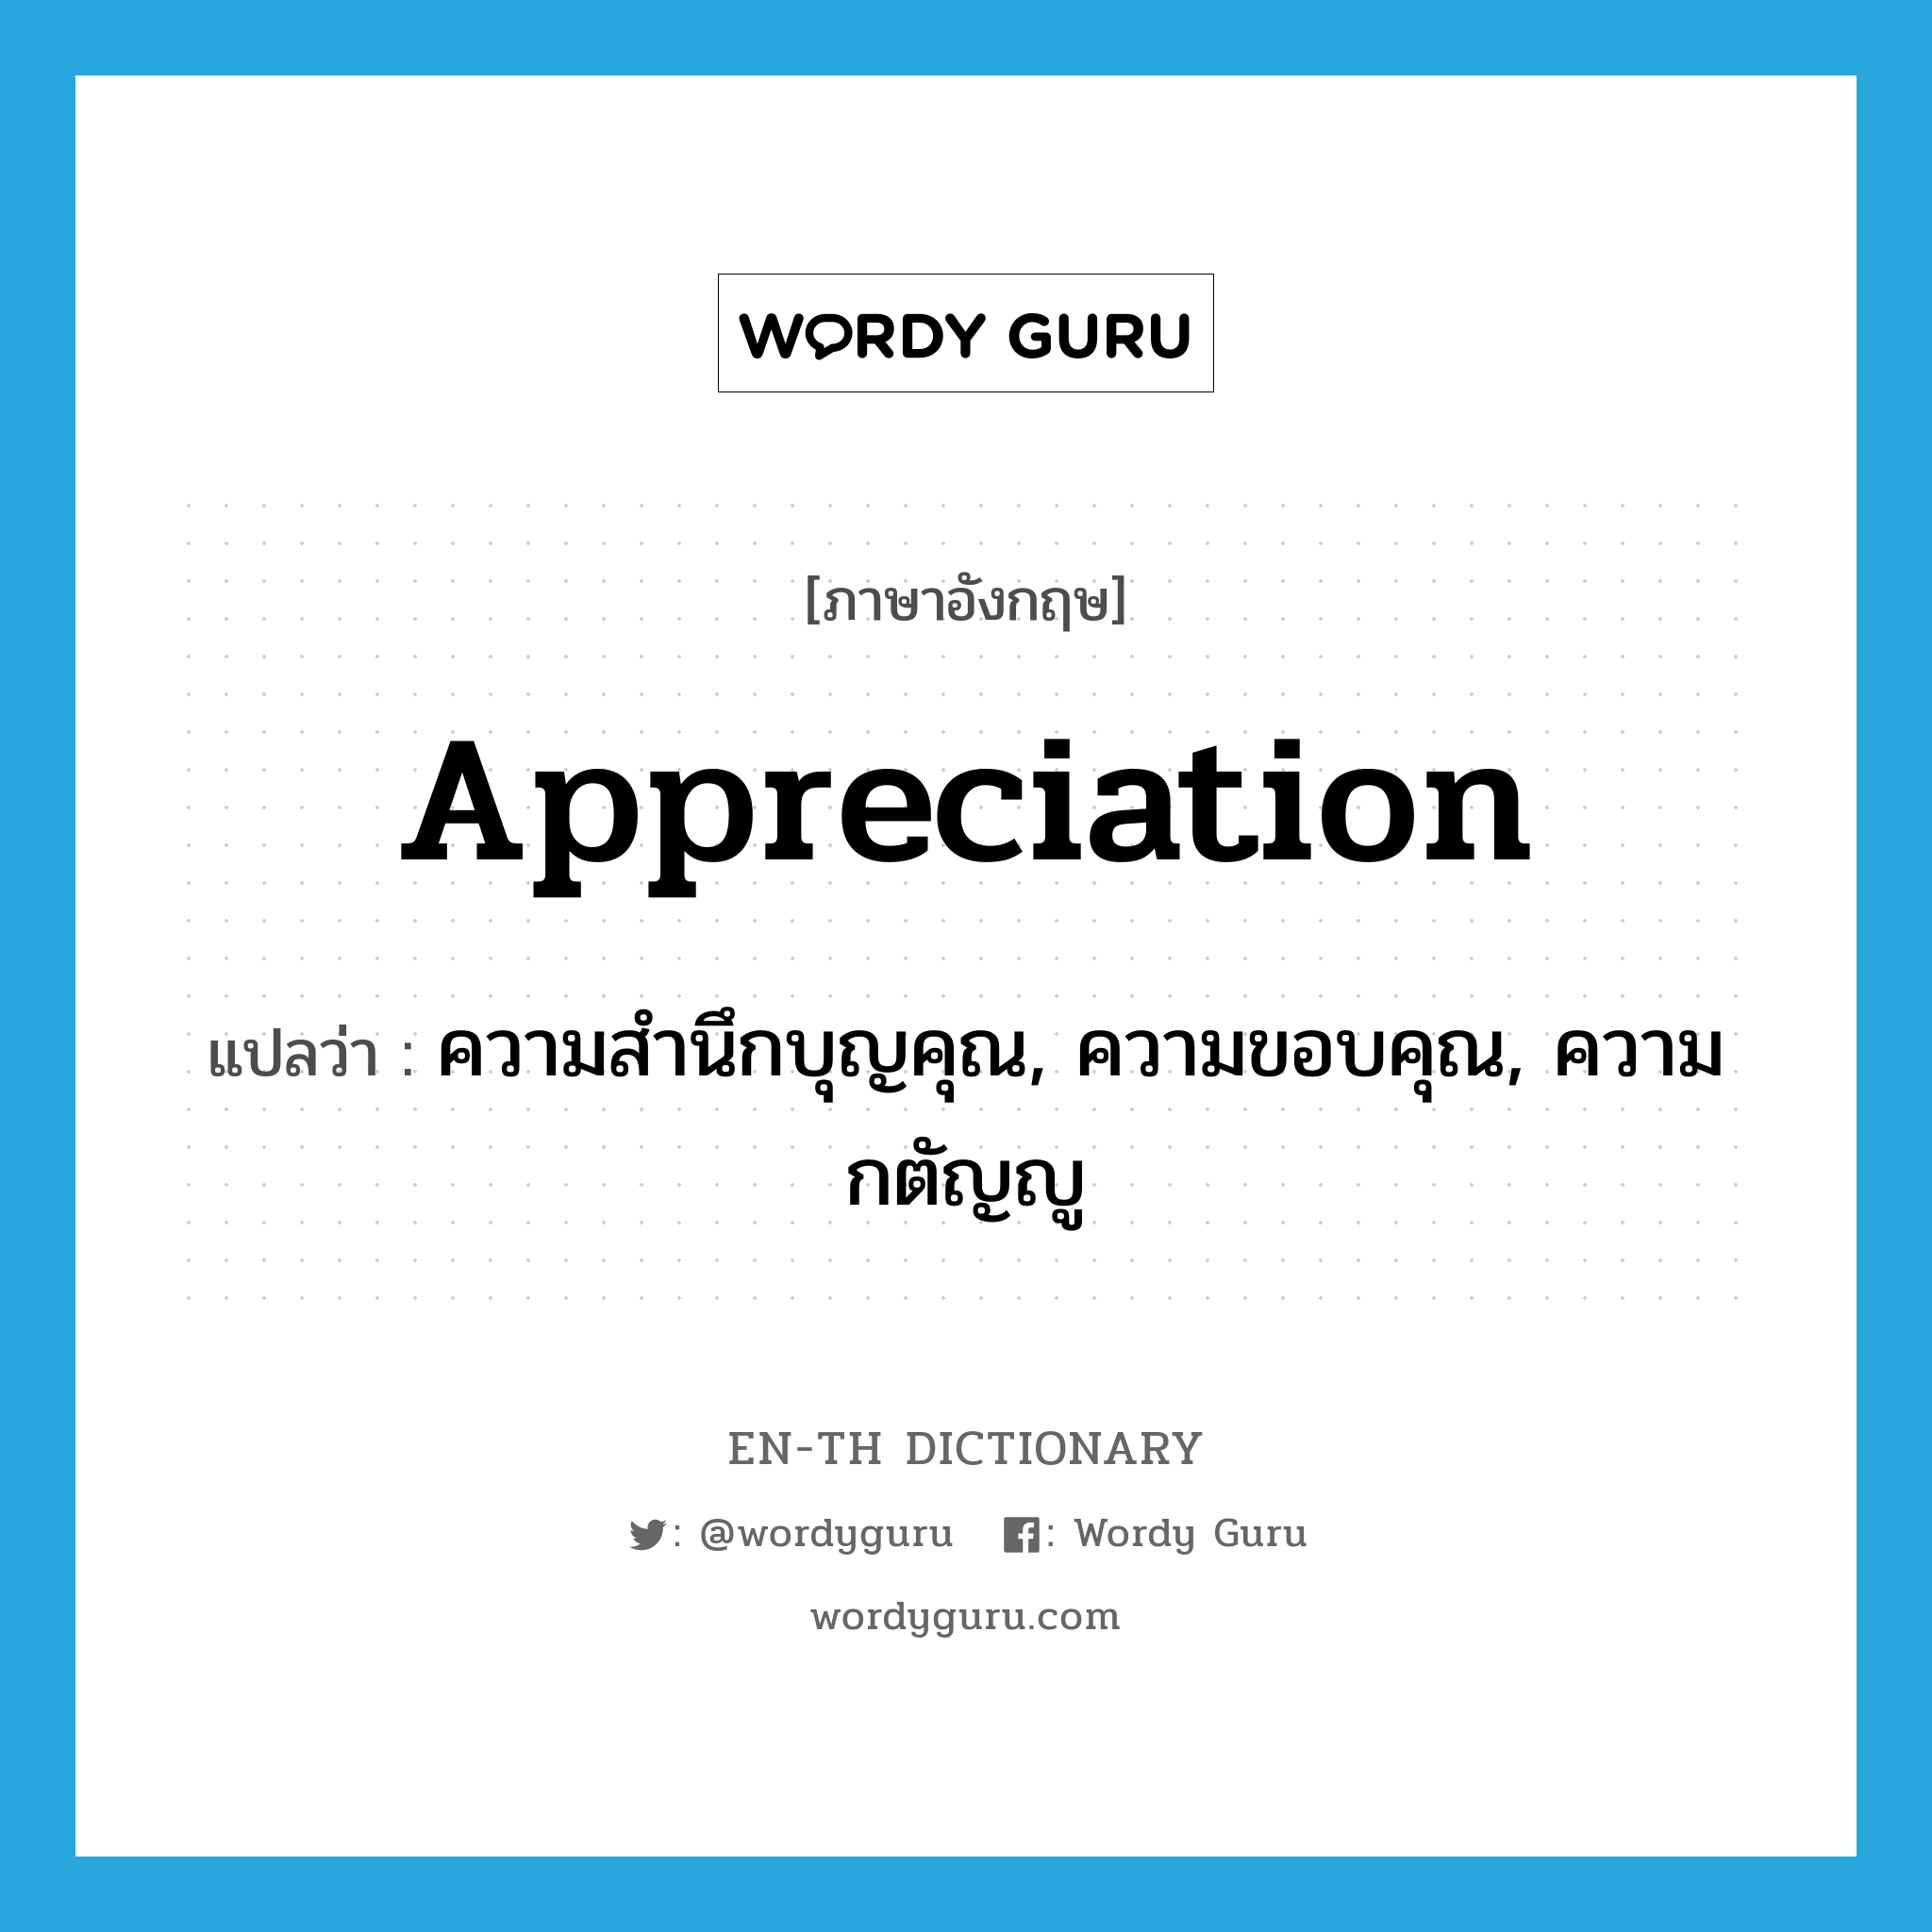 ความสำนึกบุญคุณ, ความขอบคุณ, ความกตัญญู ภาษาอังกฤษ?, คำศัพท์ภาษาอังกฤษ ความสำนึกบุญคุณ, ความขอบคุณ, ความกตัญญู แปลว่า appreciation ประเภท N หมวด N